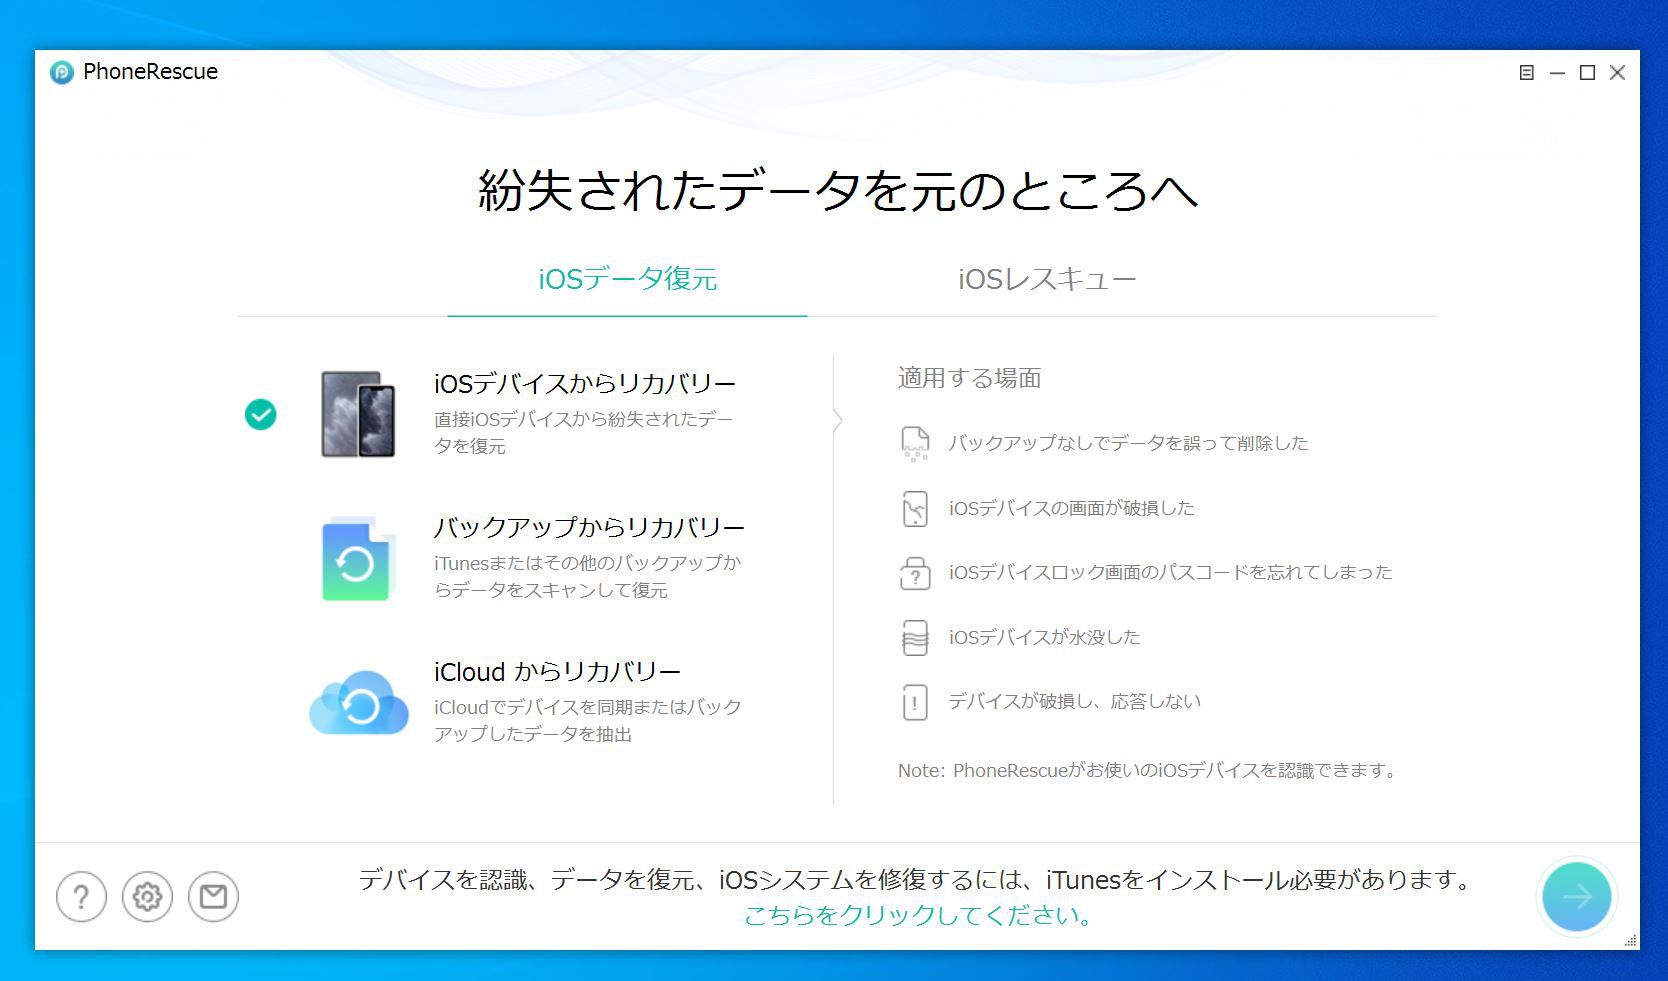 PhoneRescue for iOSの起動画面